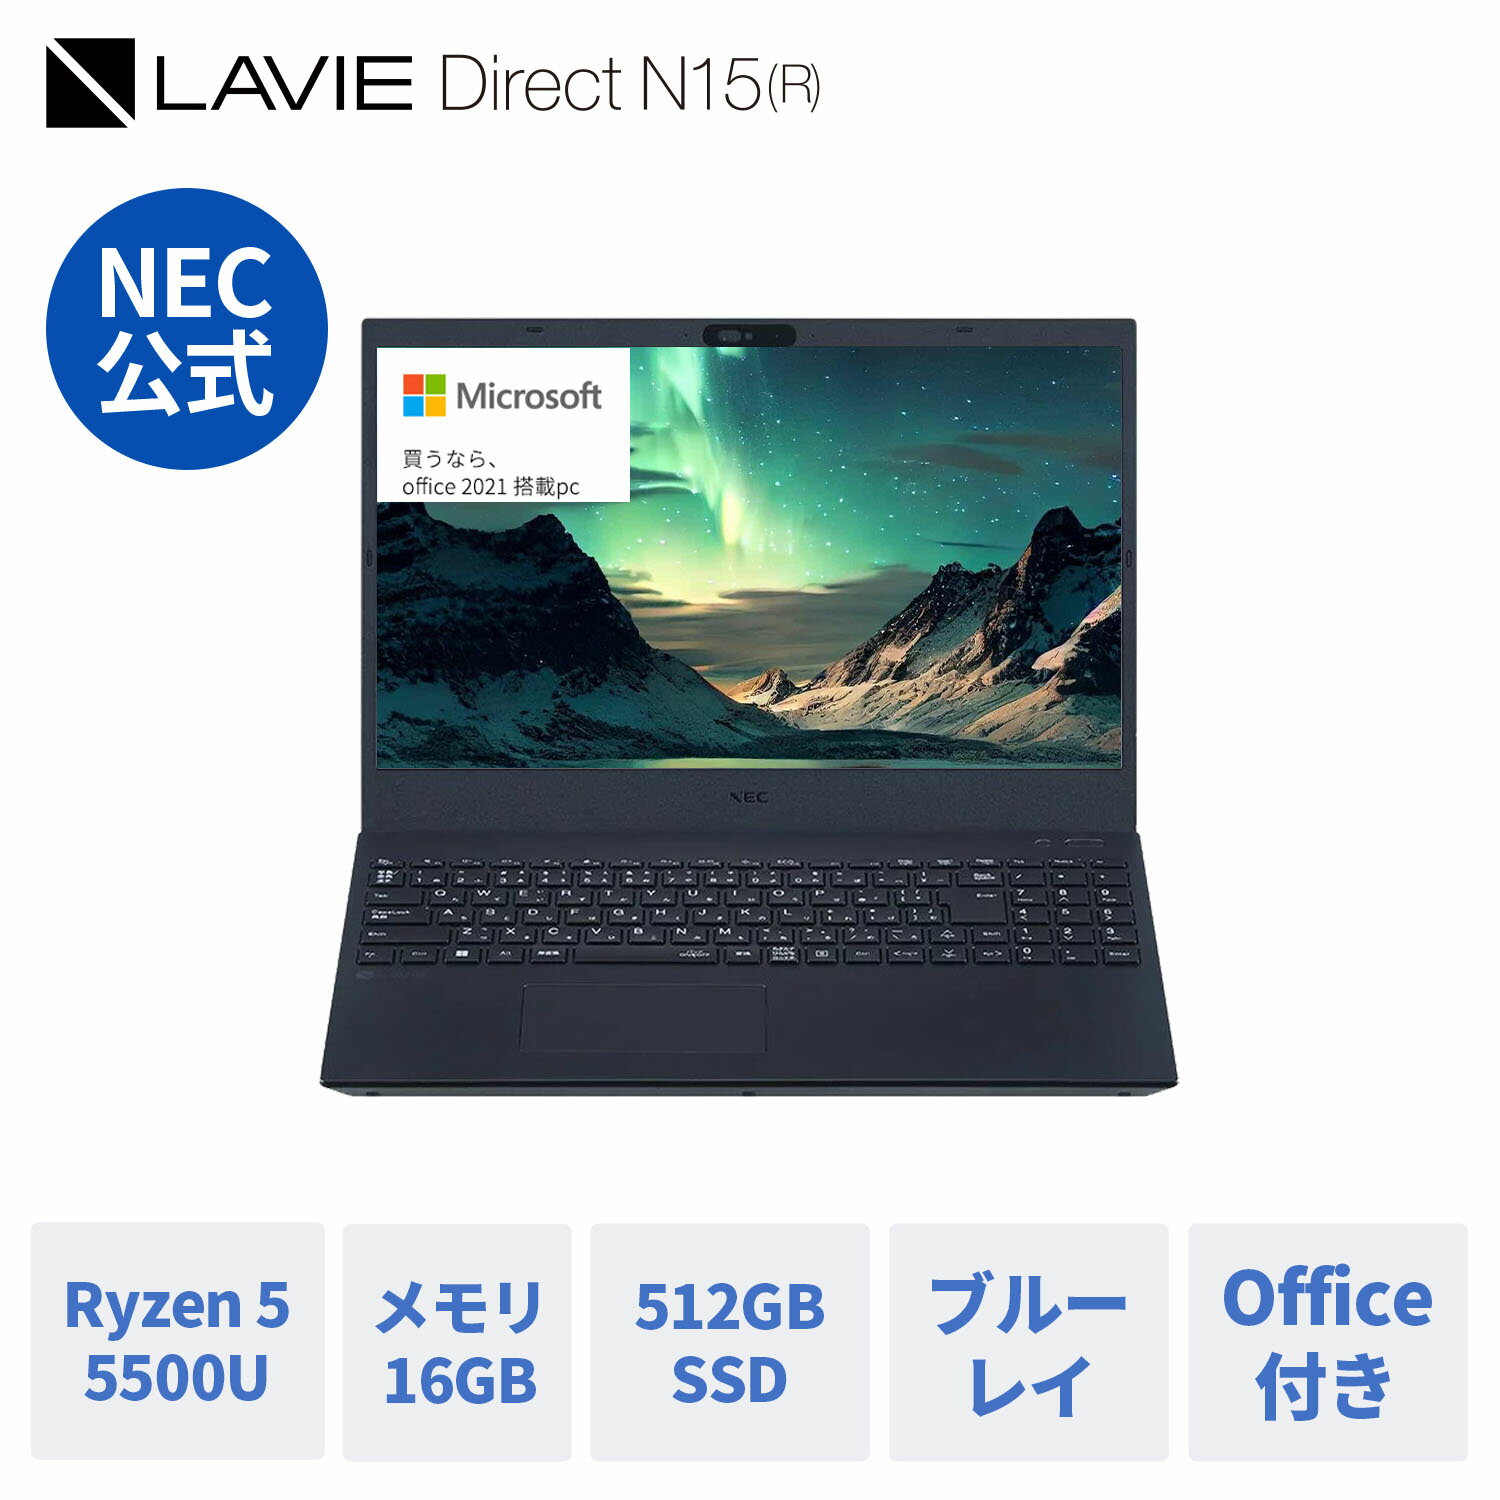  新品 NEC ノートパソコン office付き LAVIE Direct N15 (R) 15.6インチ Windows 11 Home AMD Ryzen 5-5500U メモリ 16GB 512GB SSD ブルーレイ 1年保証 送料無料 yxe